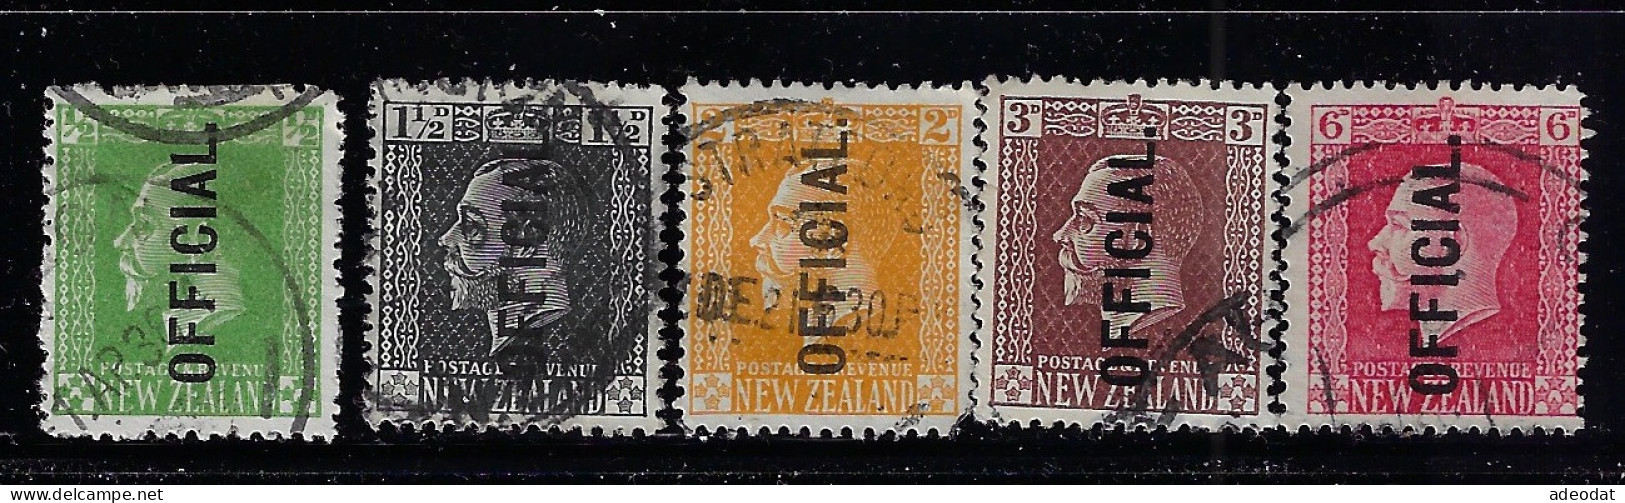 NEW ZEALAND 1915 0FFICIAL STAMPS  SCOTT #O41,O43,O45,O46,O48 USED - Officials